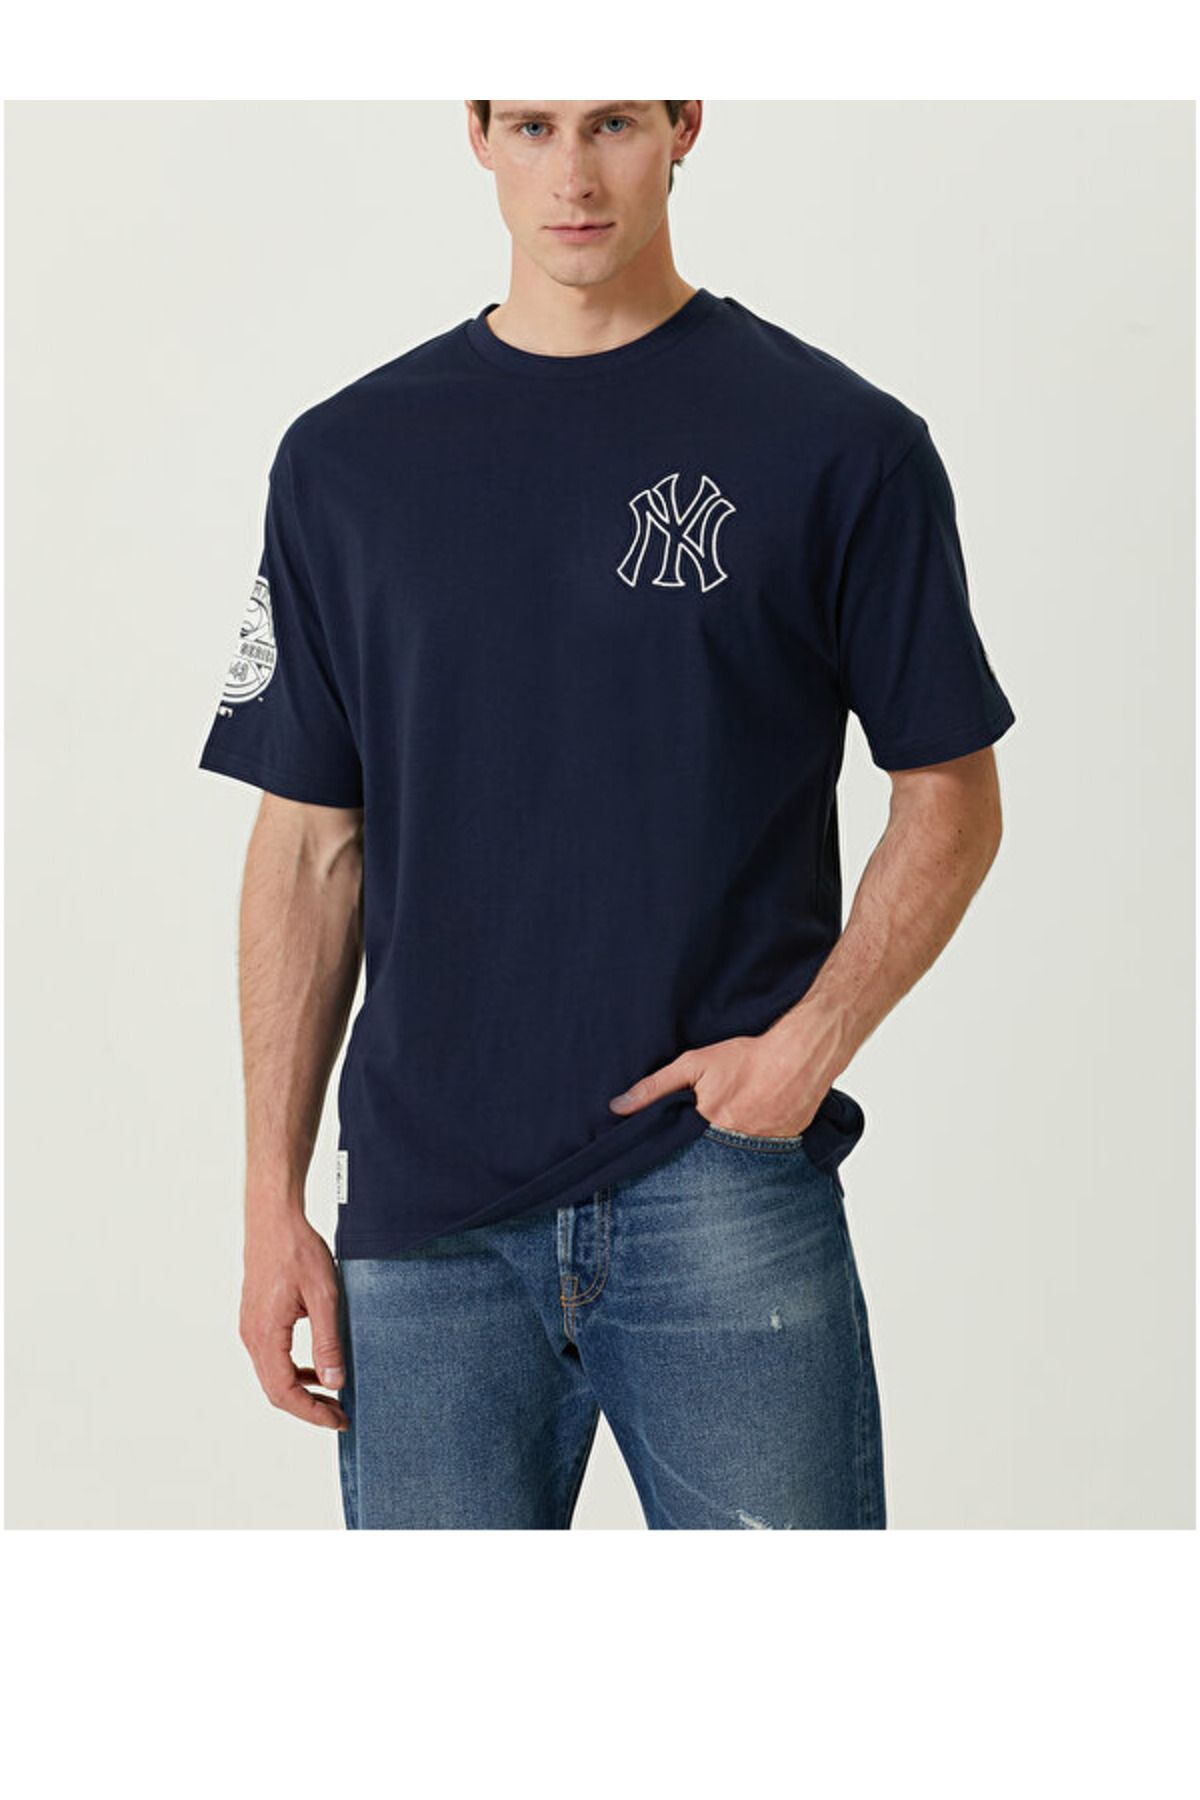 NEW ERA New York Yankees Lacivert T-shirt